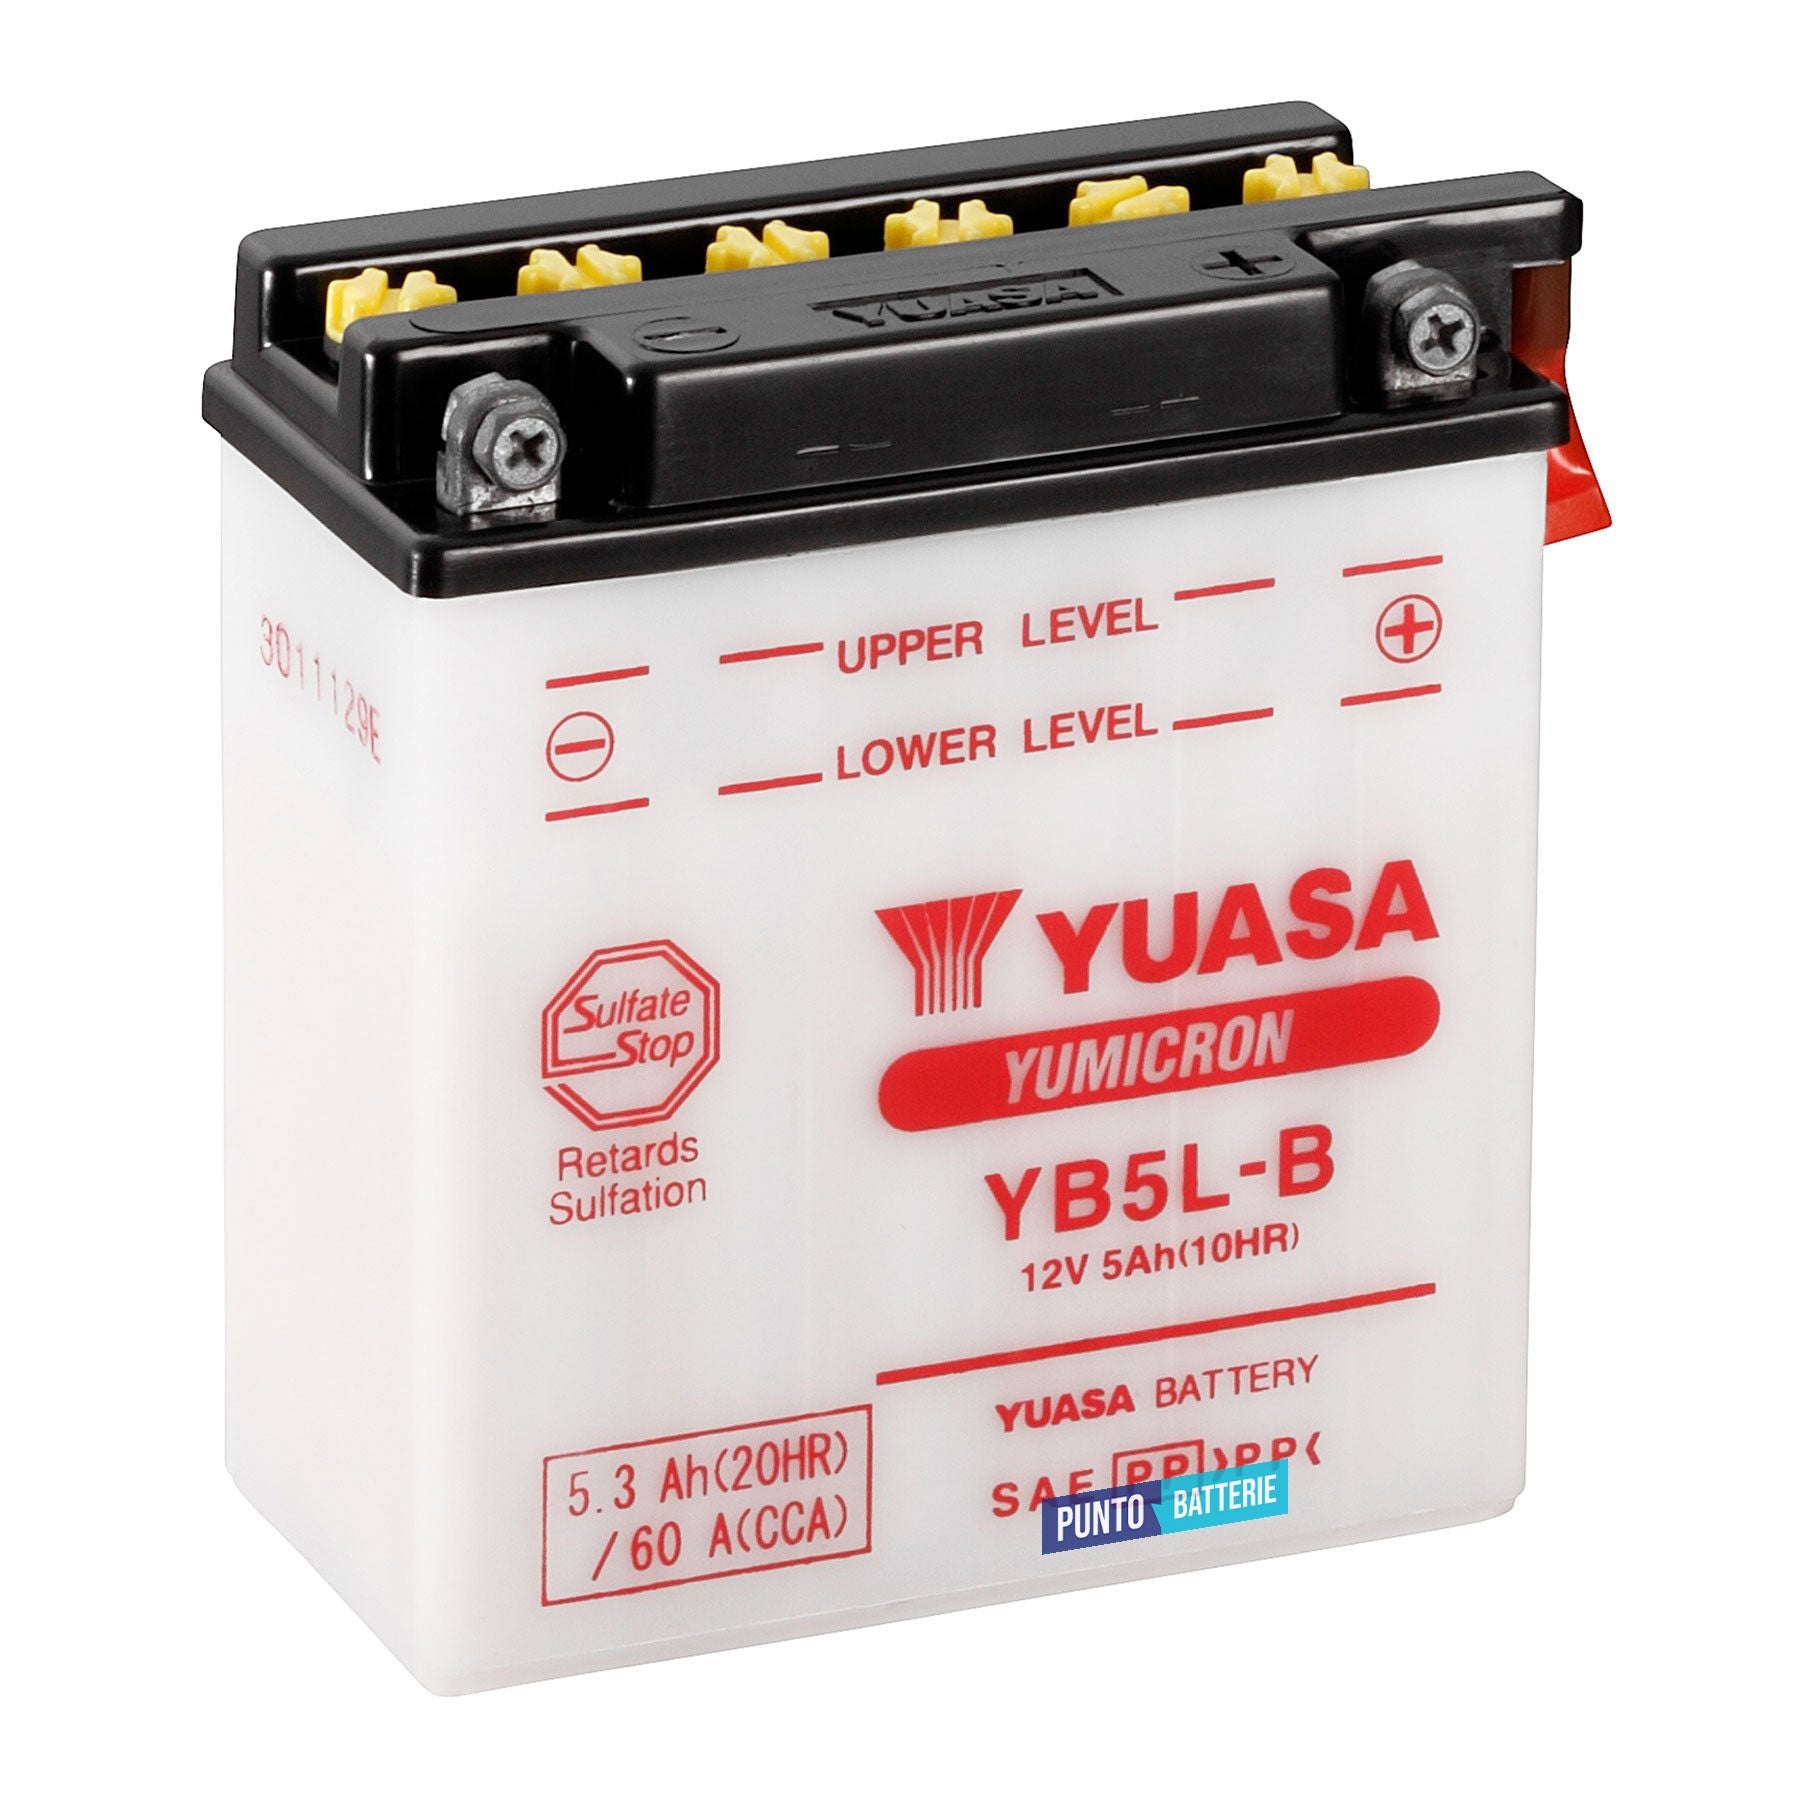 Batteria originale Yuasa YuMicron YB5L-B, dimensioni 121 x 61 x 131, polo positivo a destra, 12 volt, 5 amperora, 60 ampere. Batteria per moto, scooter e powersport.